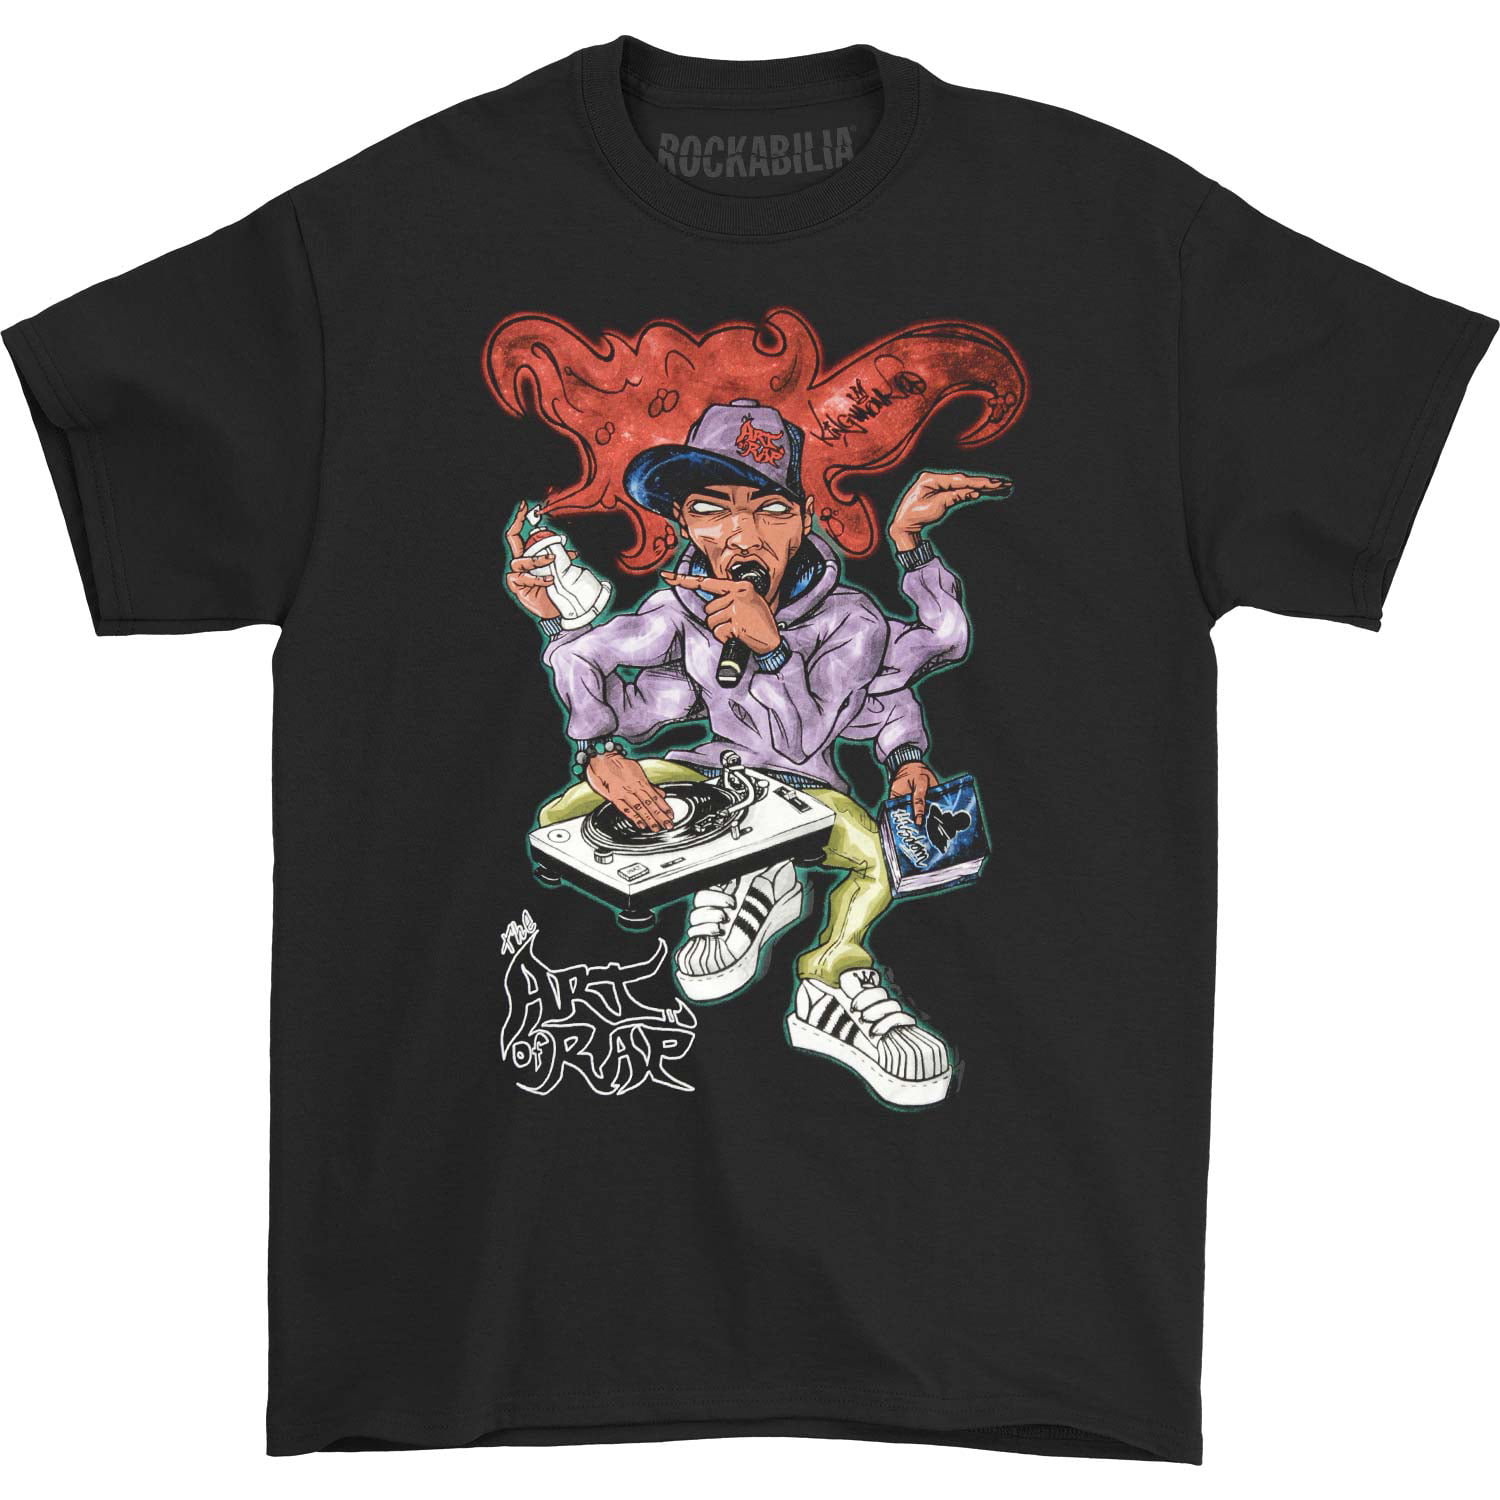 Art of Rap - Art Of Rap Men's Zulu Mens Tee T-shirt Black - Walmart.com ...